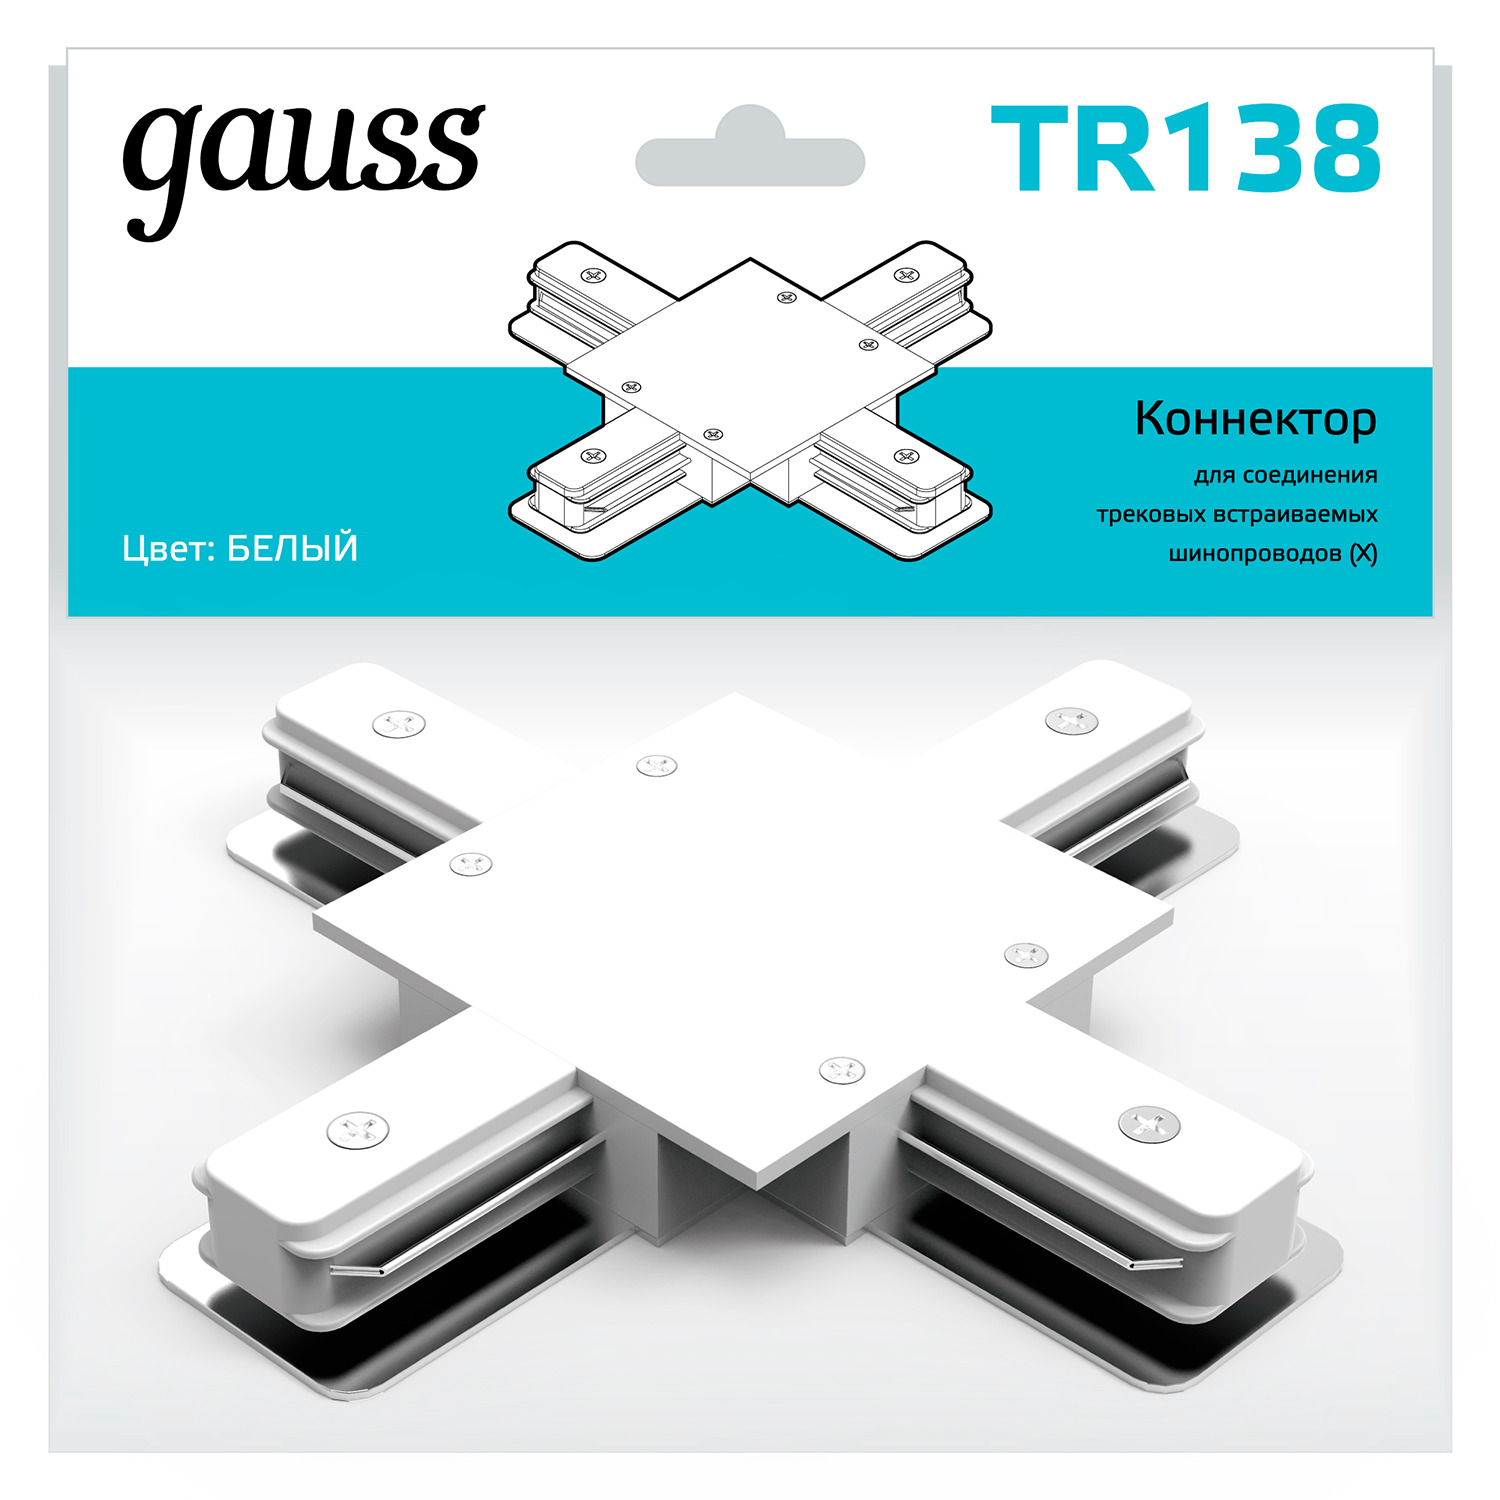 Коннектор Gauss для встраиваемых трековых шинопроводов (+) белый коннектор gauss для встраиваемых трековых шинопроводов белый